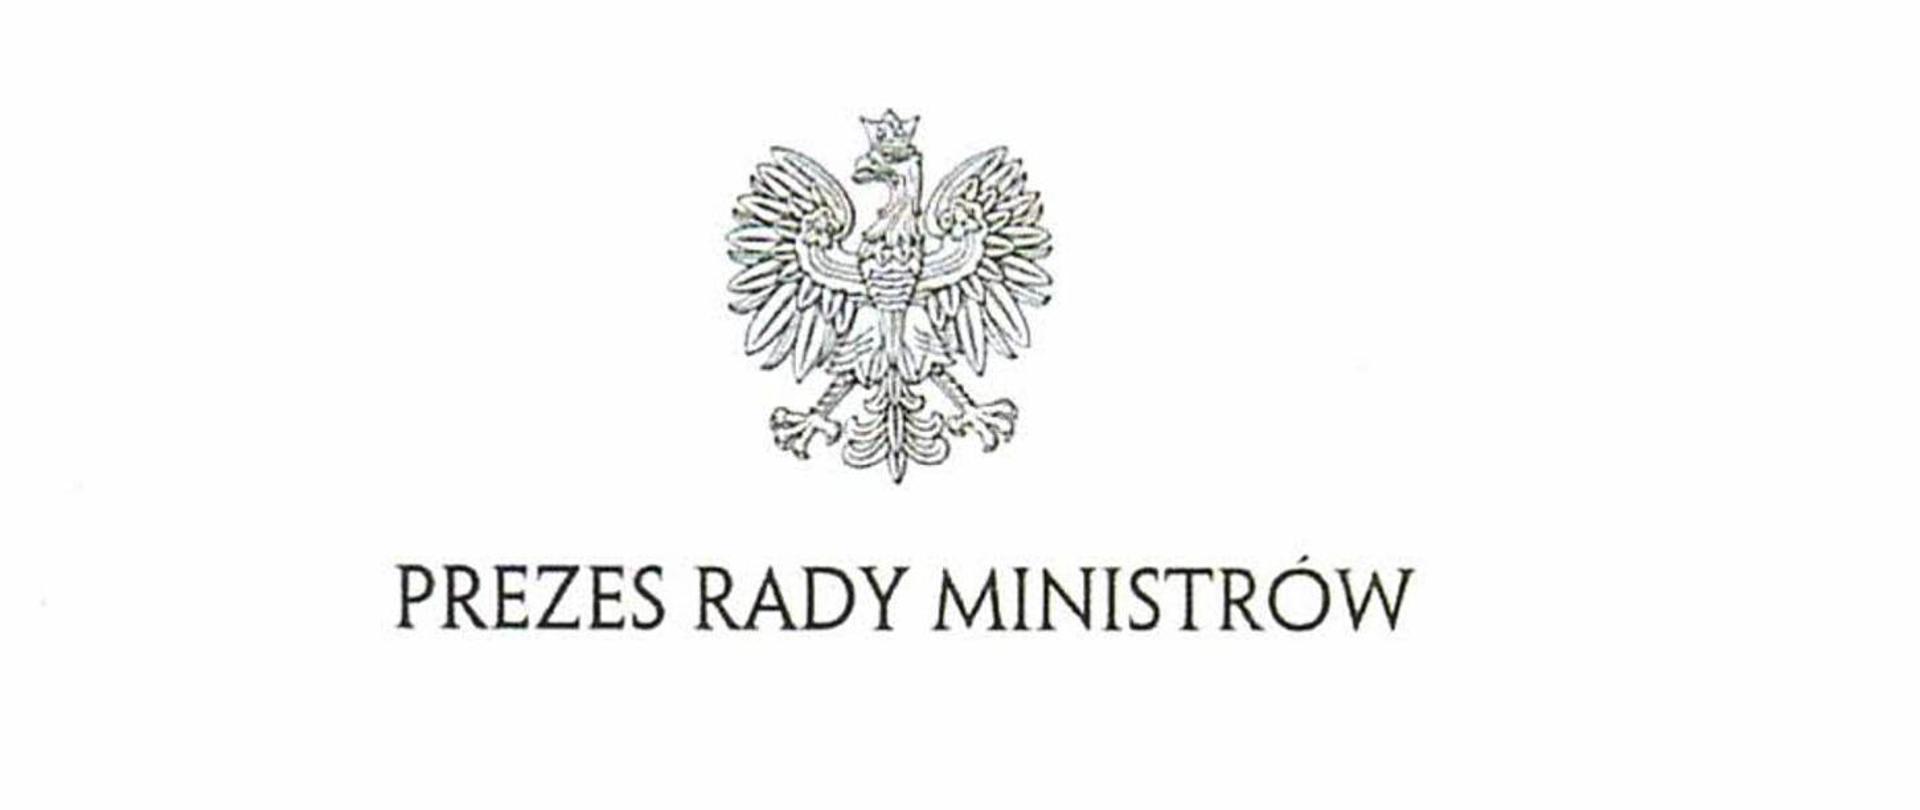 Logo Prezesa Rady Ministrów u góry widoczny orzeł, poniżej napis Prezes Rady Ministrów